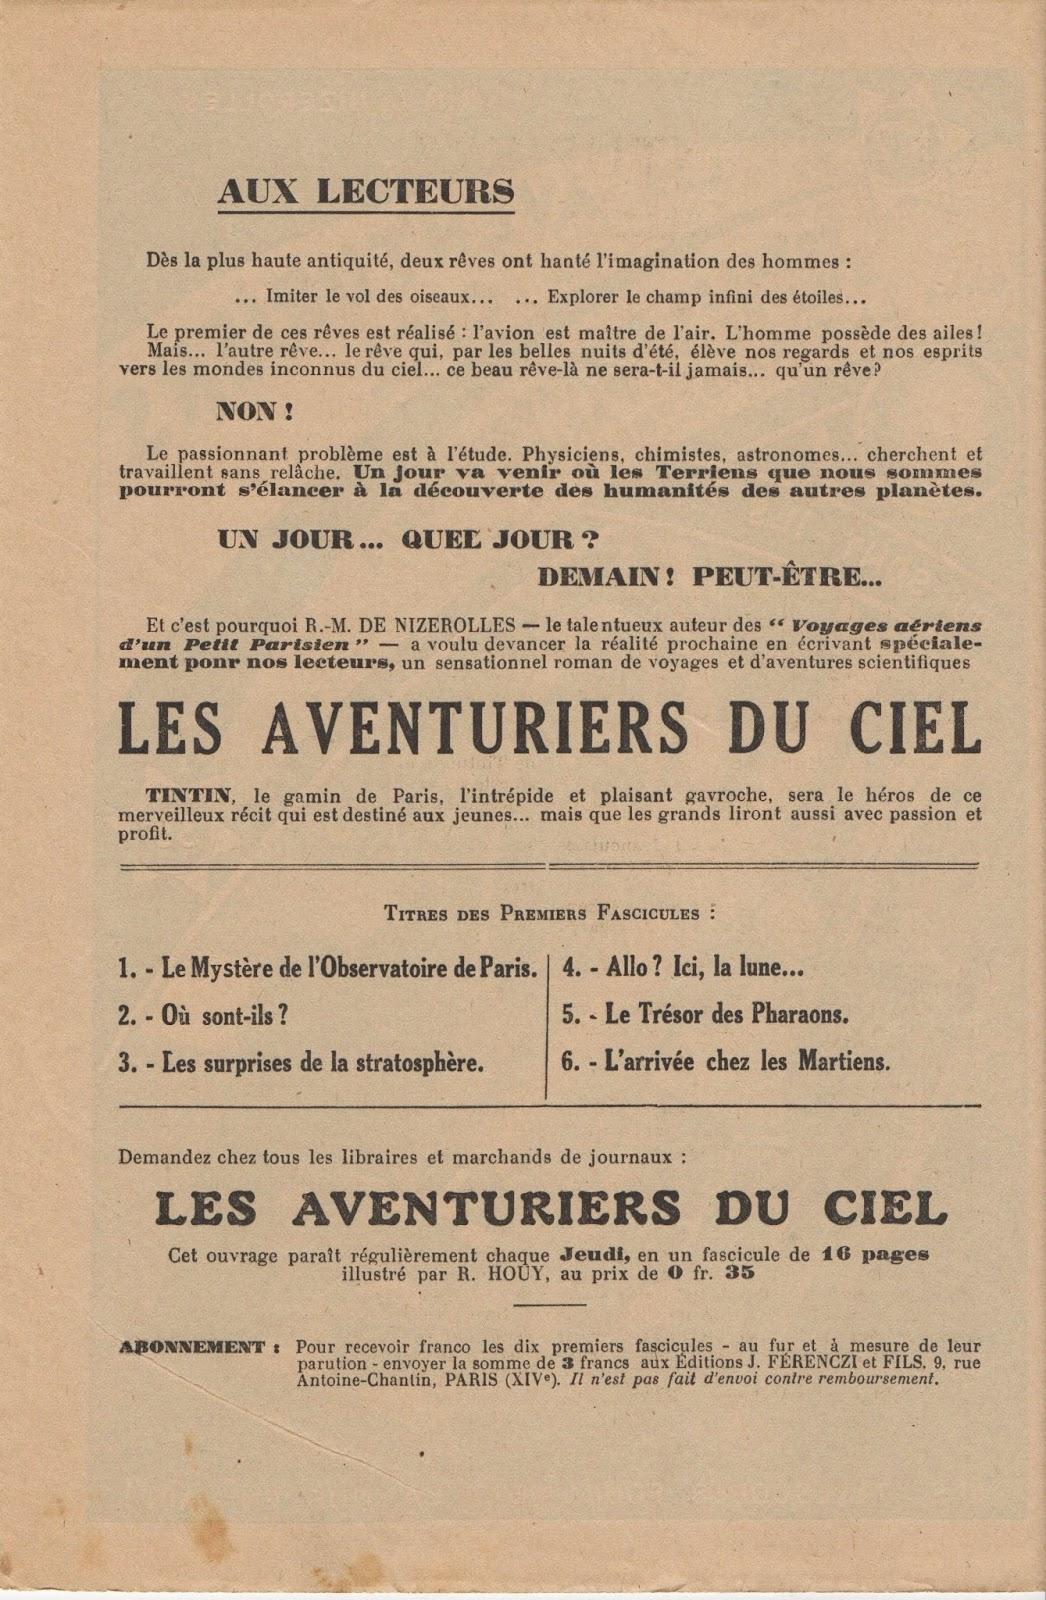 Les aventuriers du ciel : premier journal illustré de science-fiction français ?